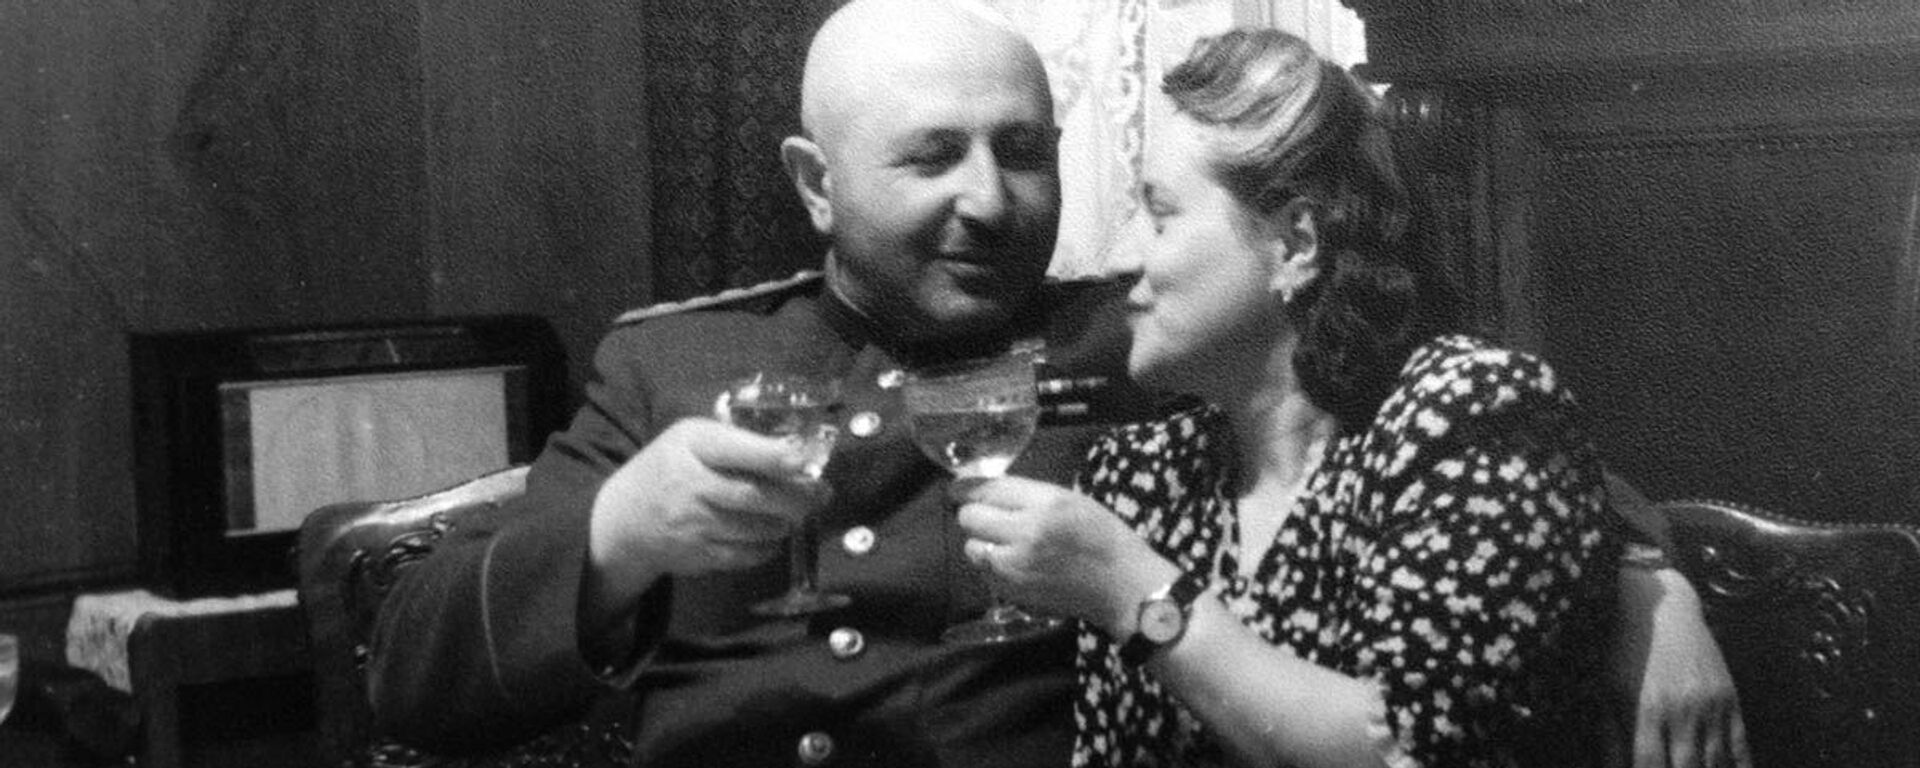 Հովհաննես Բաղրամյանը կնոջ հետ - Sputnik Արմենիա, 1920, 02.12.2021